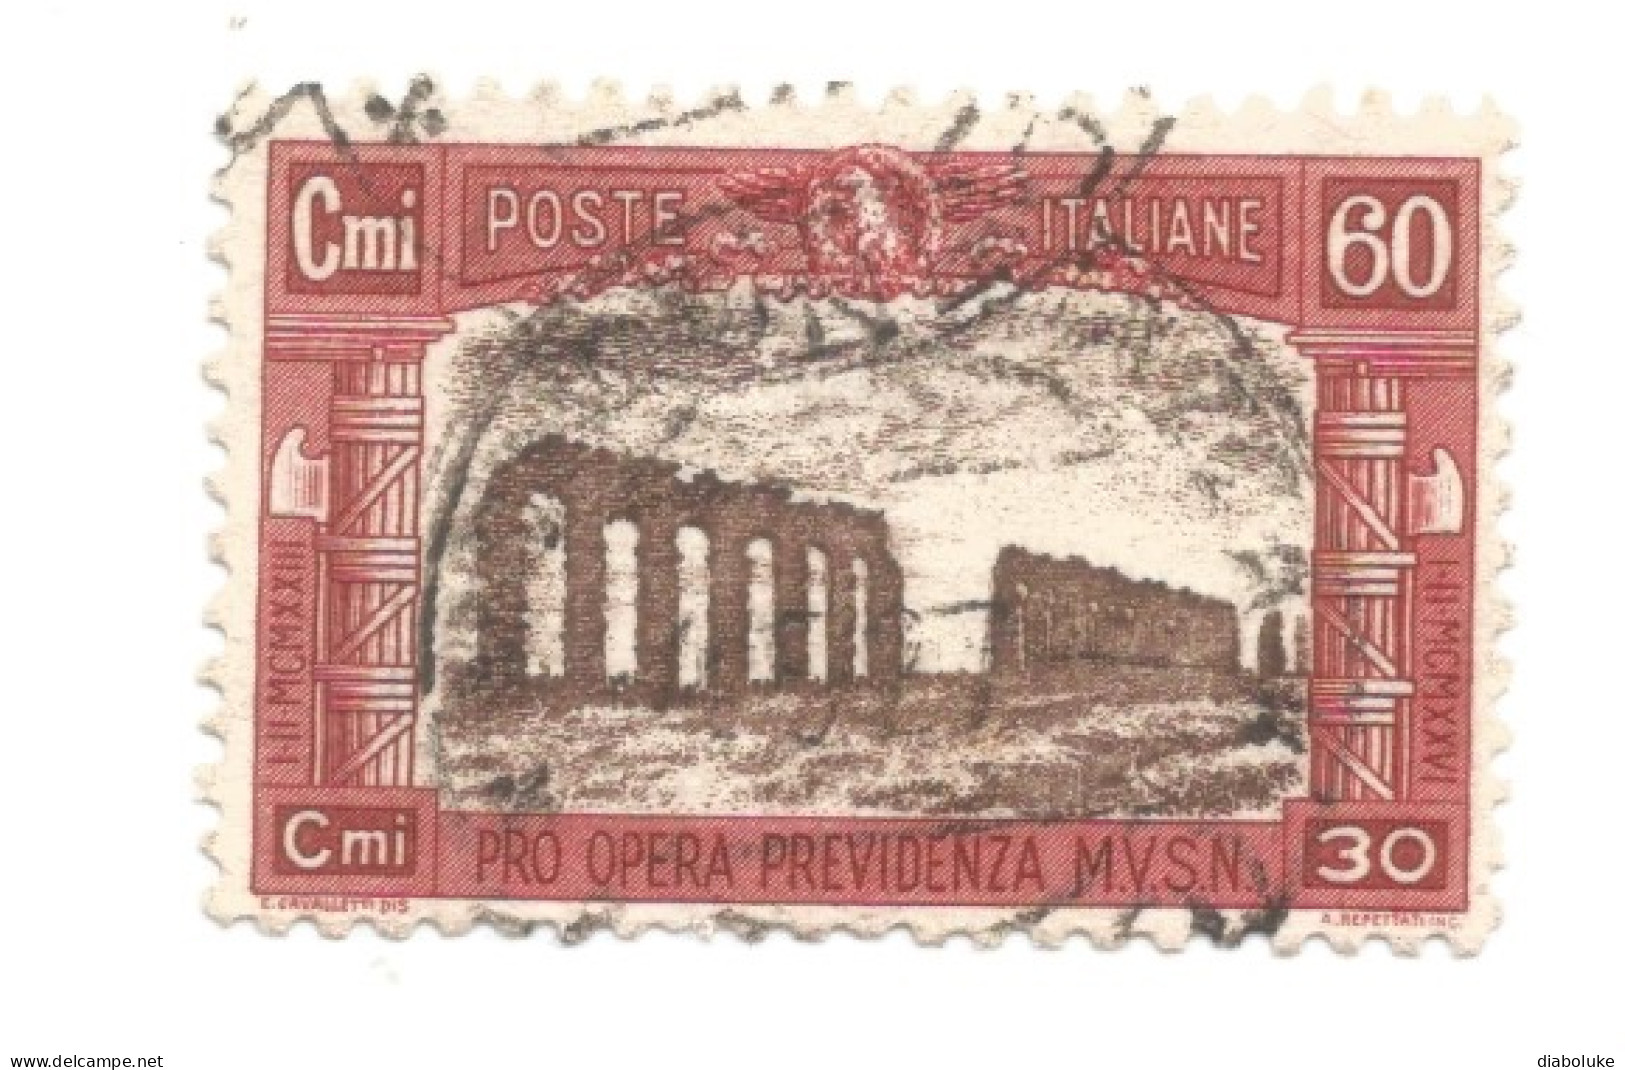 (REGNO D'ITALIA) 1926, PRO OPERA PREVIDENZIA MILIZIA - Serie Di 4 Francobolli Usati, Annulli Da Periziare - Poste Aérienne